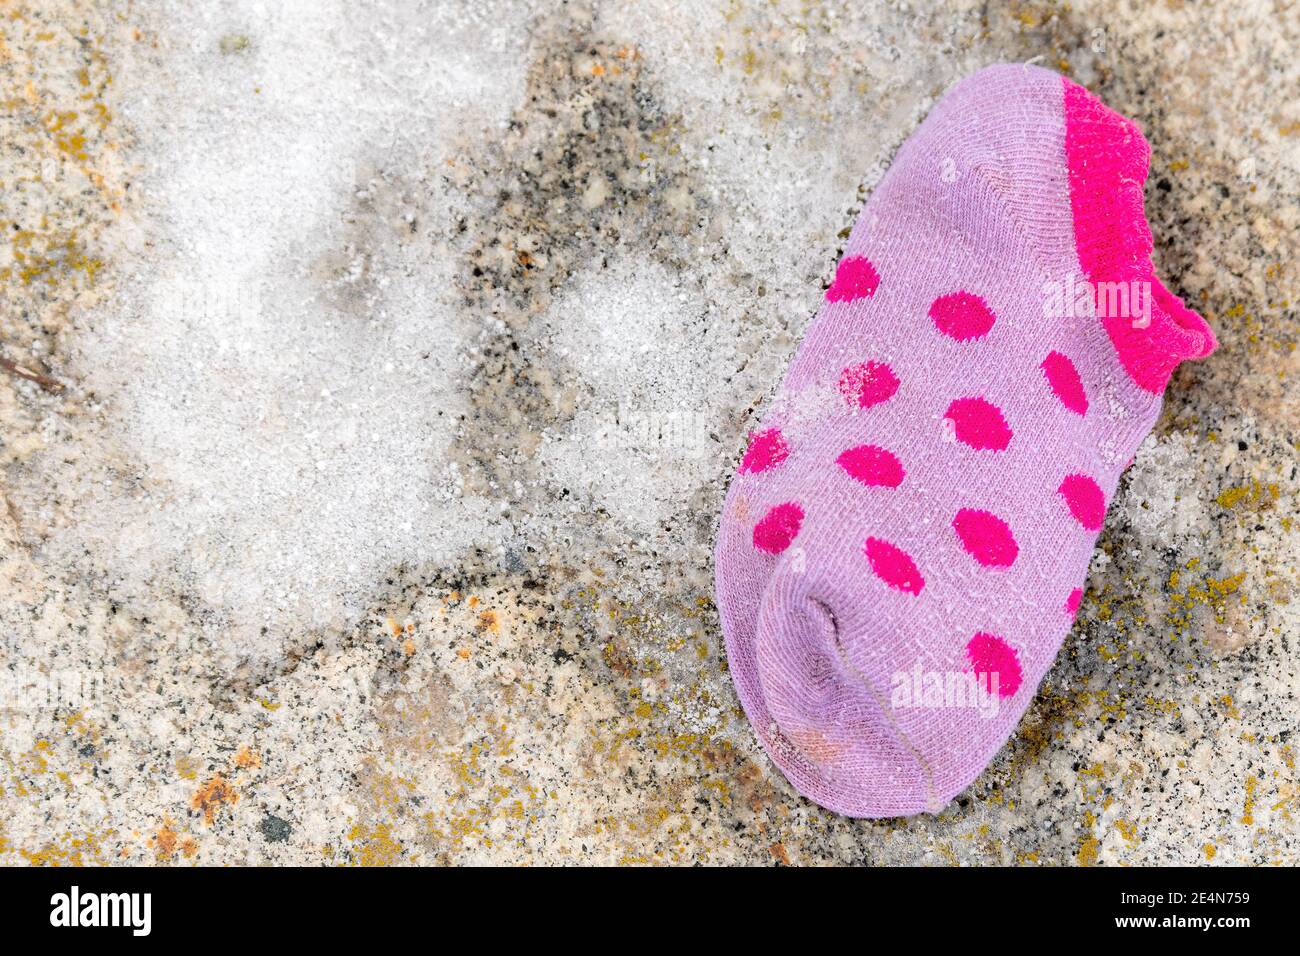 Une seule chaussette perdue pour enfant posée sur le sol. La chaussette est petite et pourpre, avec une petite quantité de neige à côté. Vue directement vers le bas par le dessus. Banque D'Images